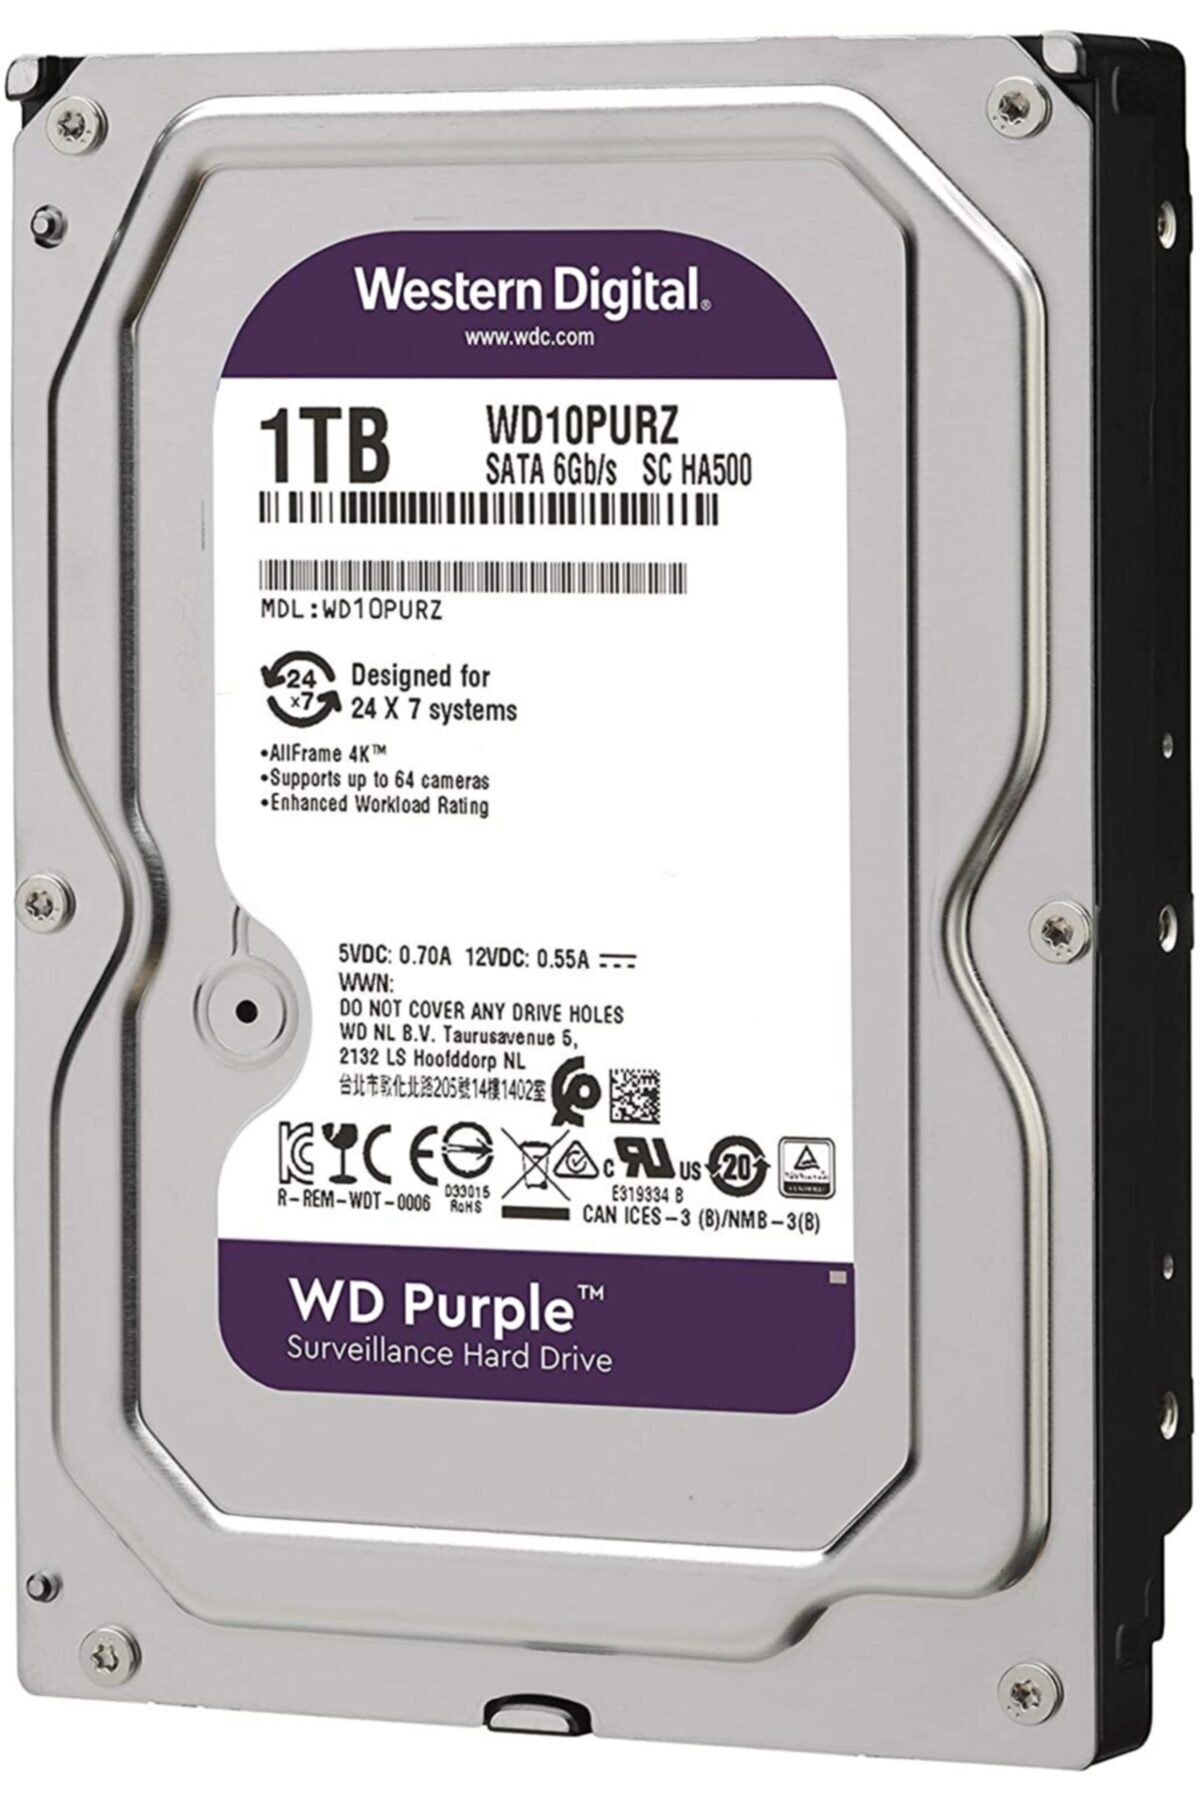 WESTERN DIGITAL Wd Purple Wd10purz 1 Tb 3.5" Sata 3 64 Mb 7/24 Güvenlik Kamerası Diski